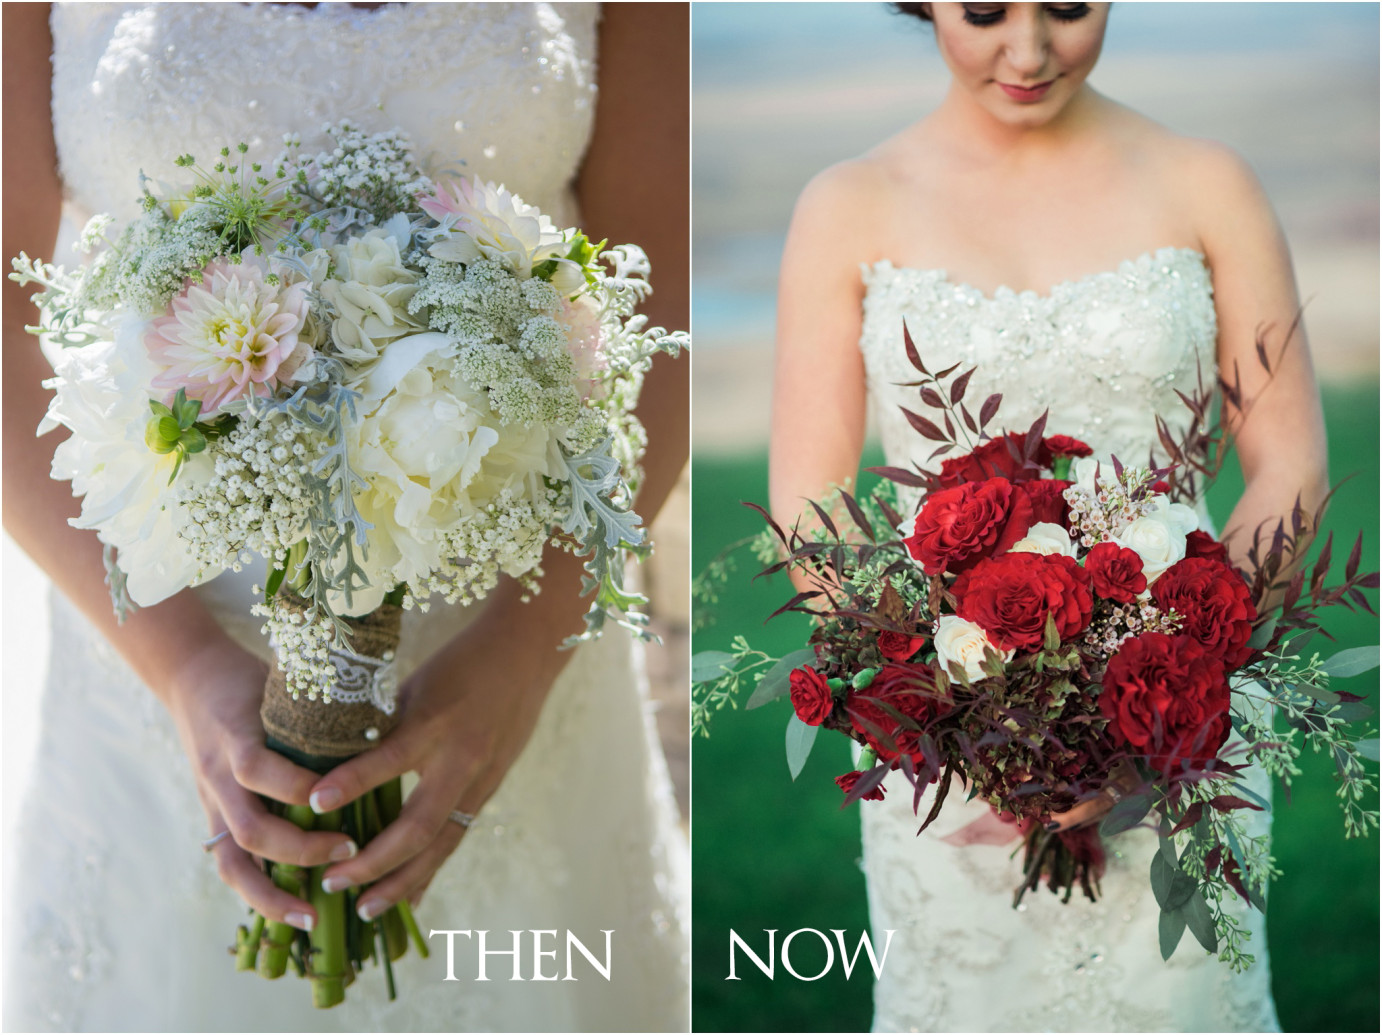 Then and Now Wenatchee Photographer Bridal bouquet comparison photo